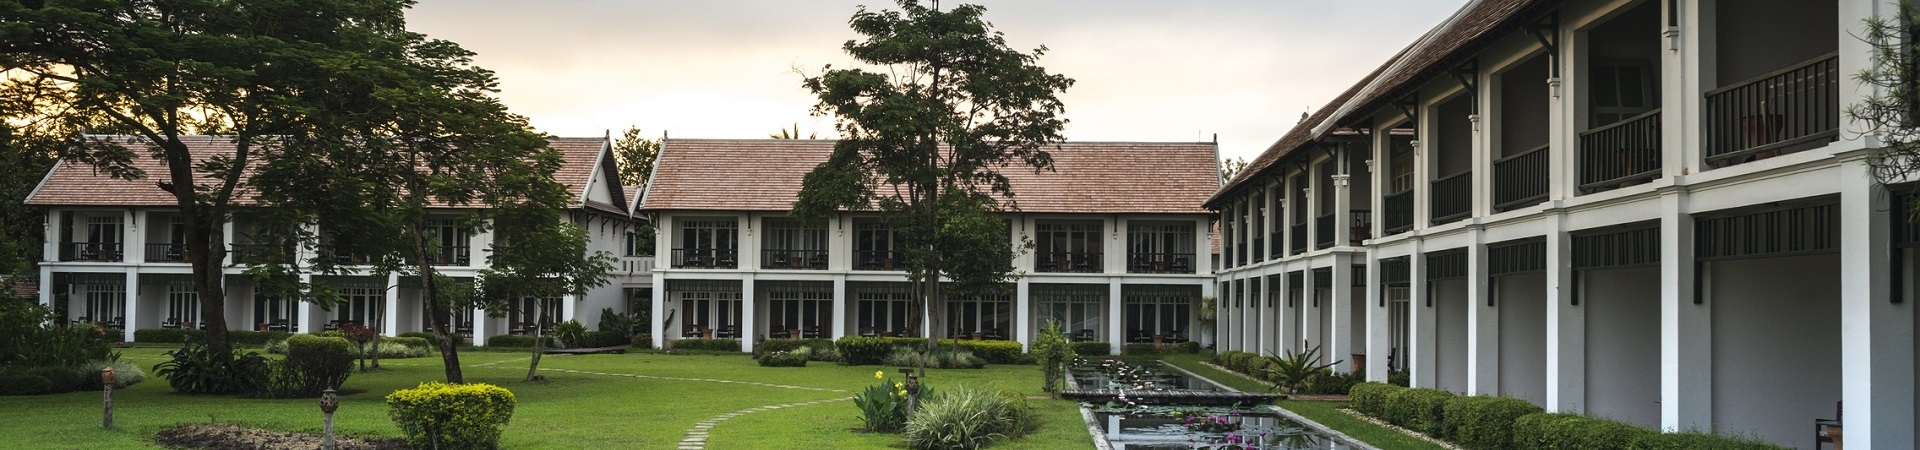 The Grand Luang Prabang Hotel and Resort